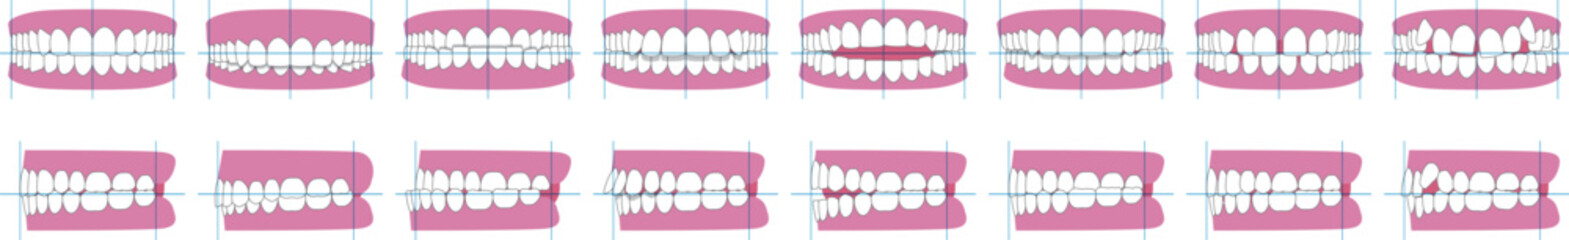 歯並び、歯列の不正咬合の種類。正面と横のベクターイラスト